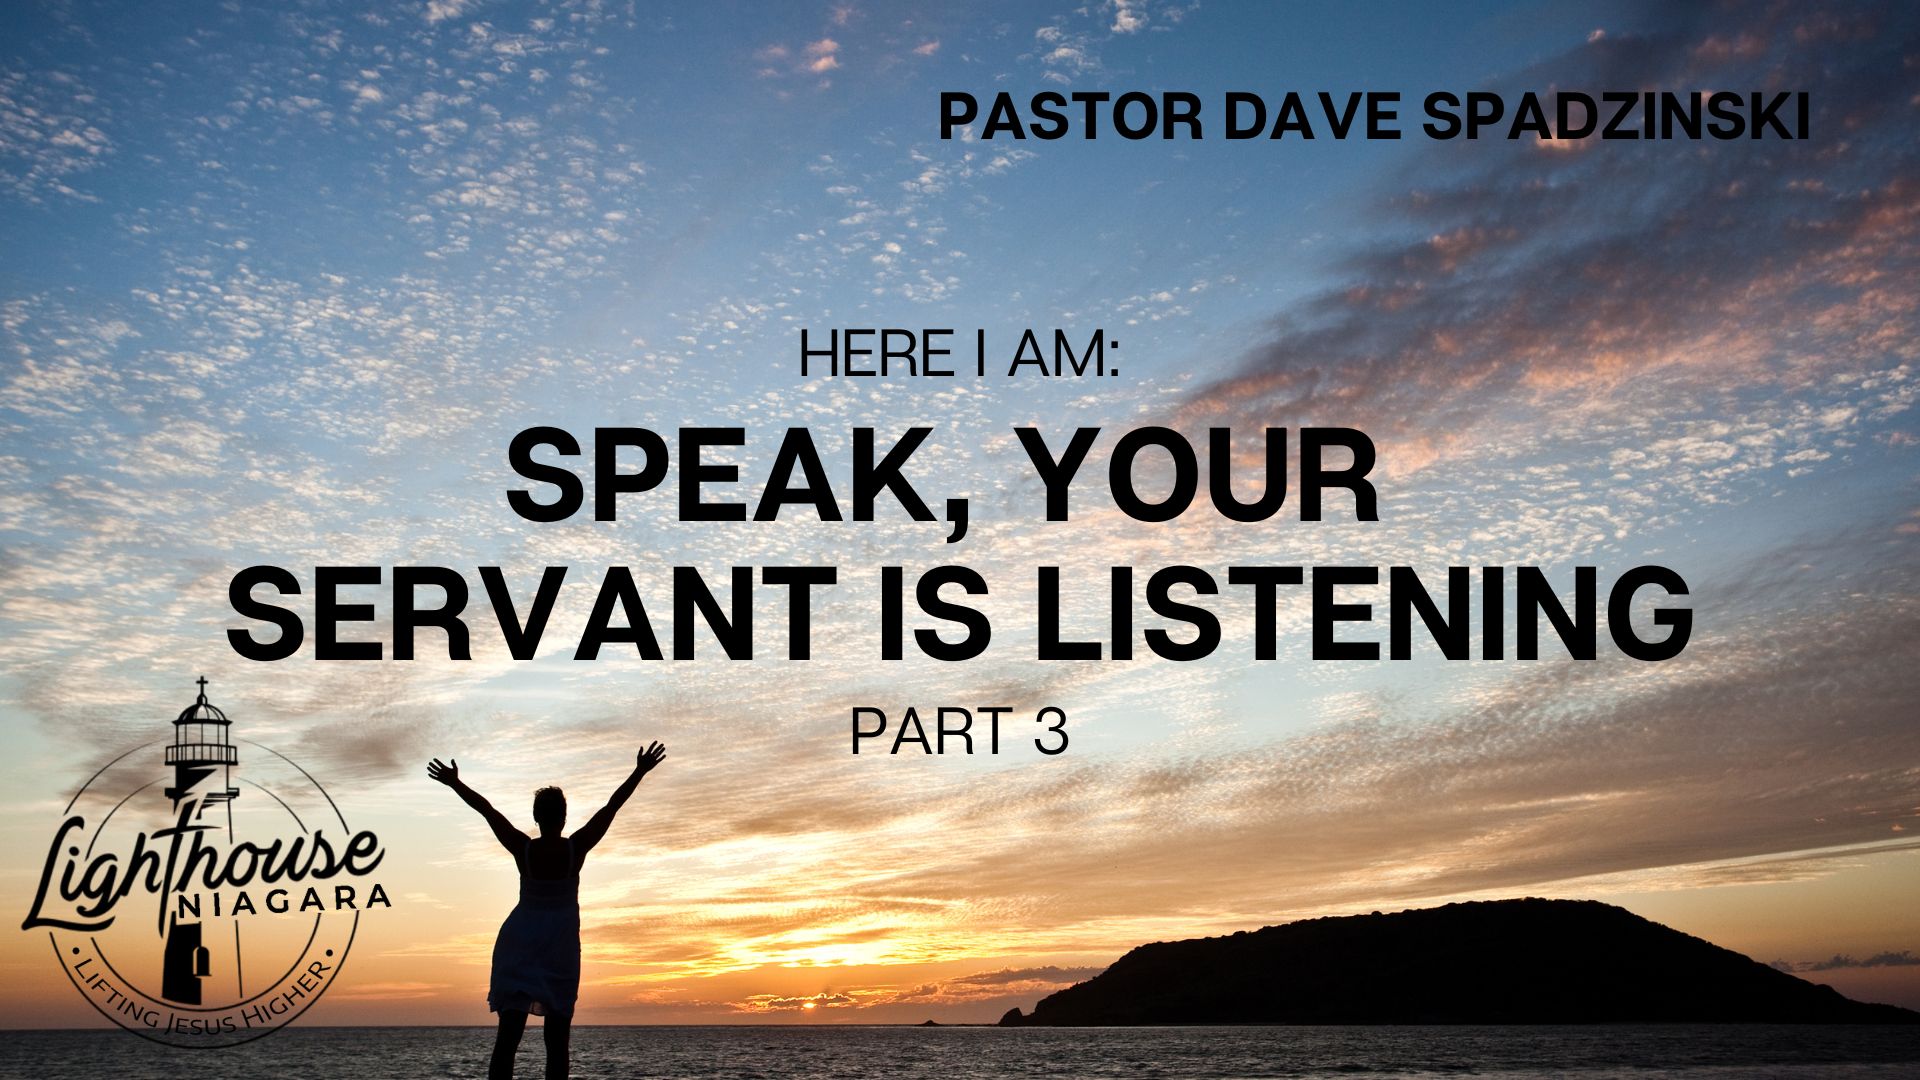 Here I Am: Speak, Your Servant Is Listening - Pastor Dave Spadzinski